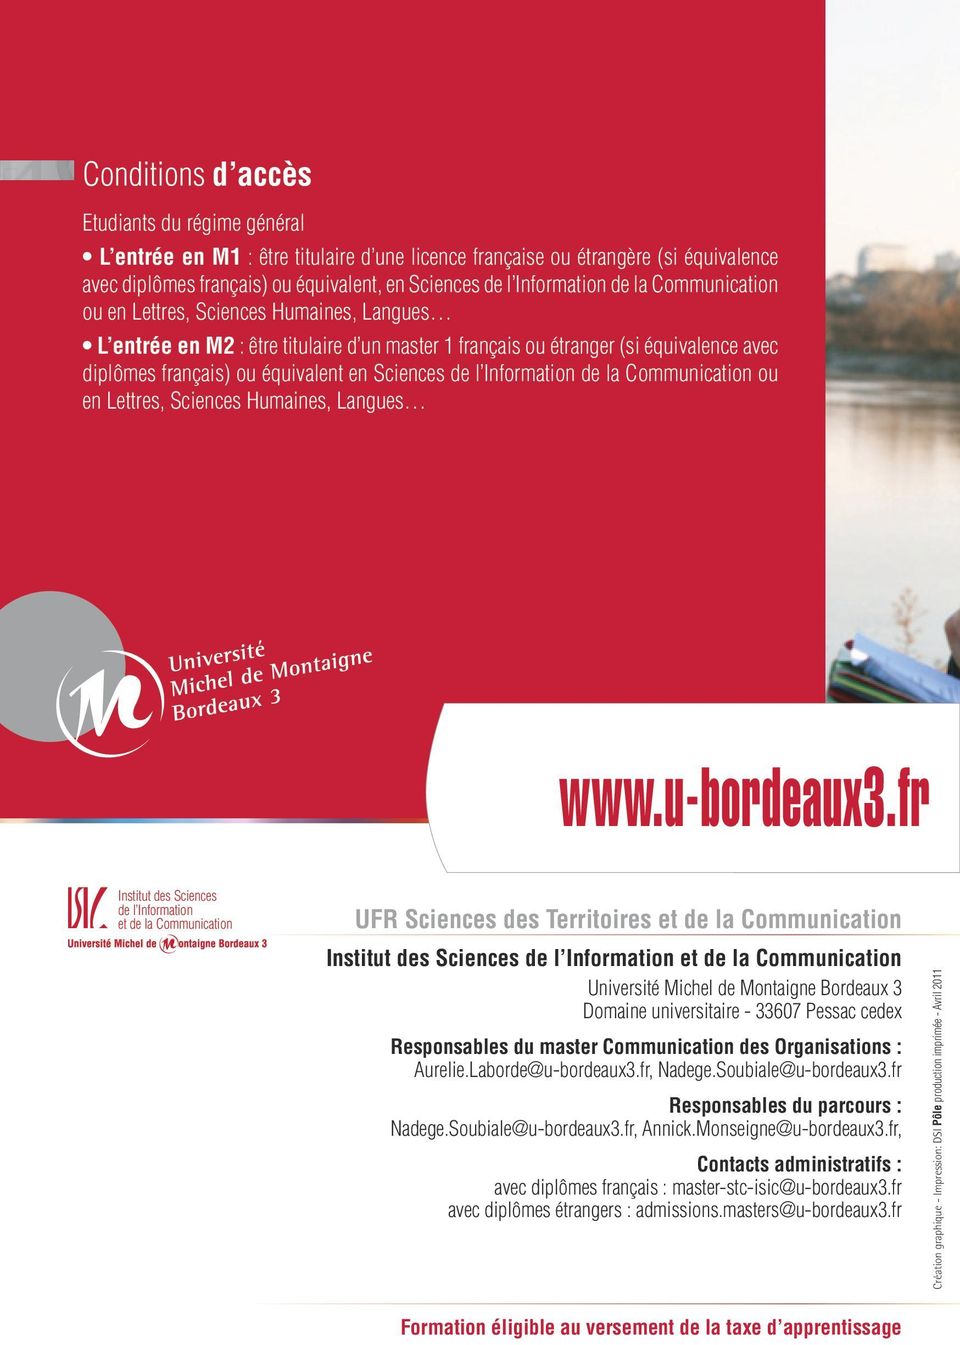 Information de la Communication ou en Lettres, Sciences Humaines, Langues www.u-bordeaux3.